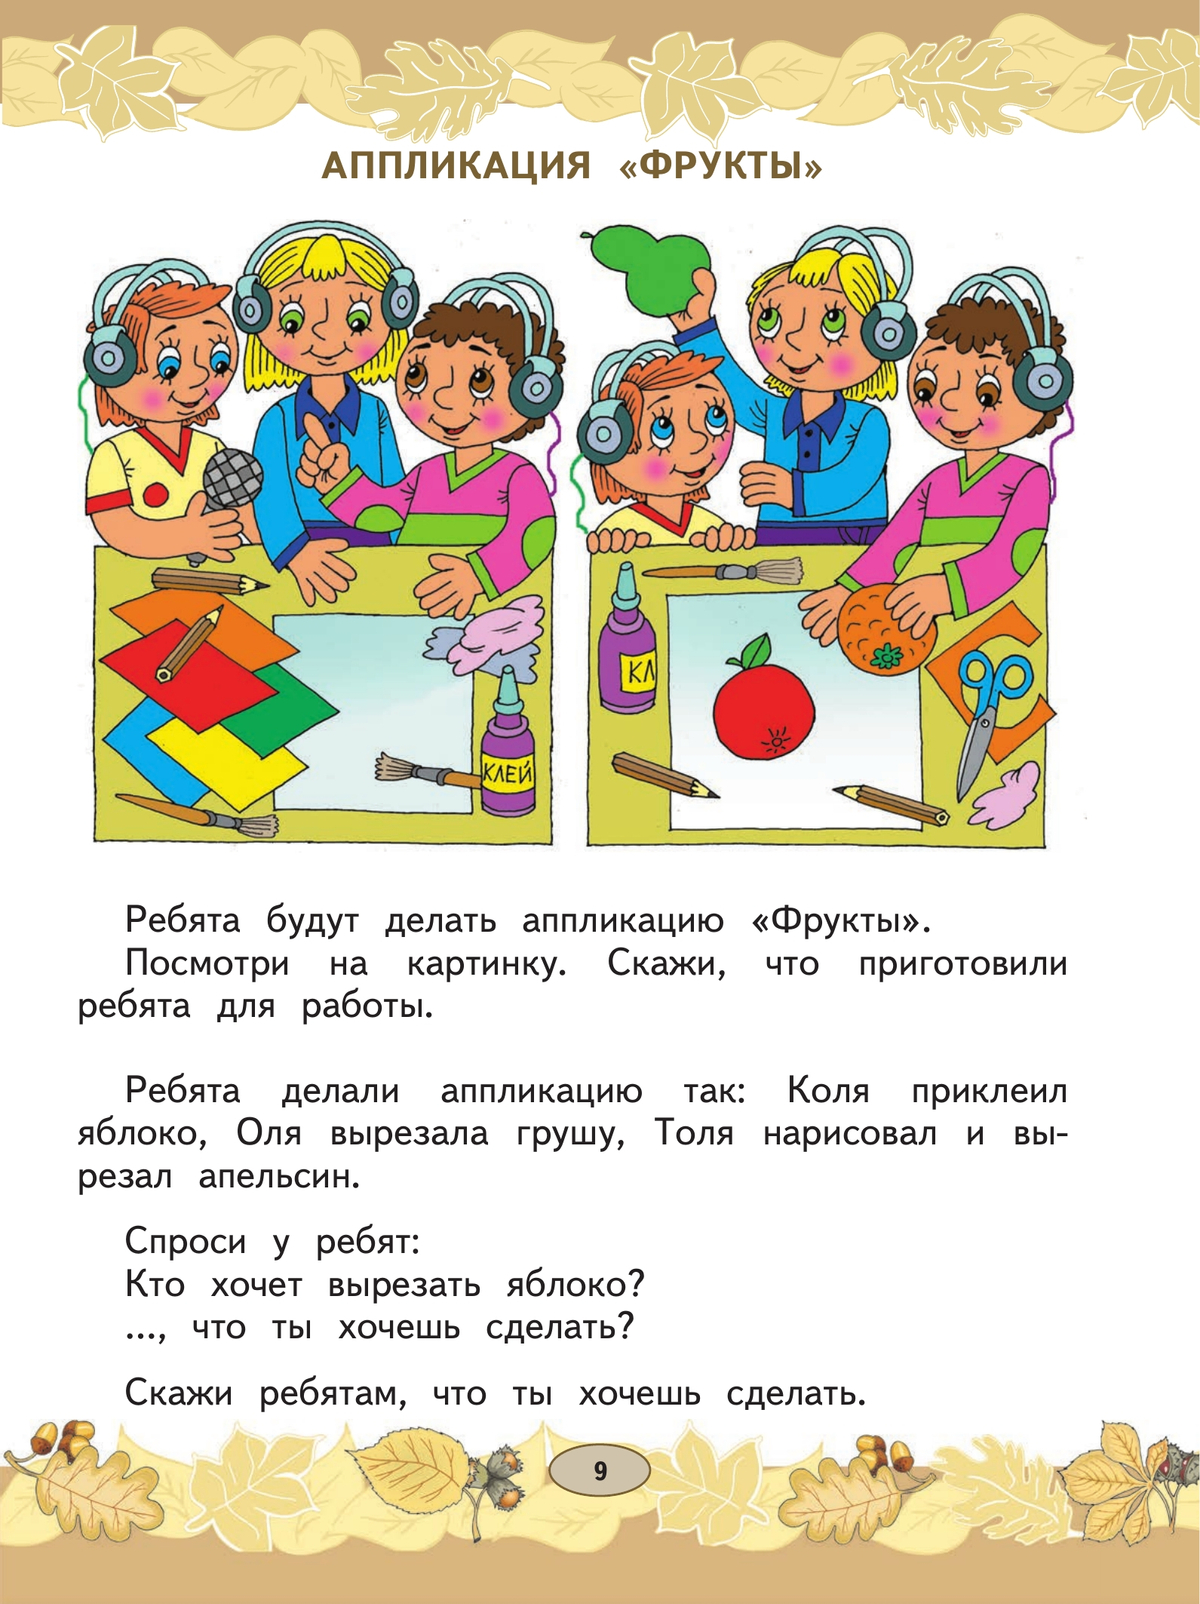 Русский язык. Развитие речи. 1 класс. Учебник. В 2 ч. Часть 1 (для глухих обучающихся) 11